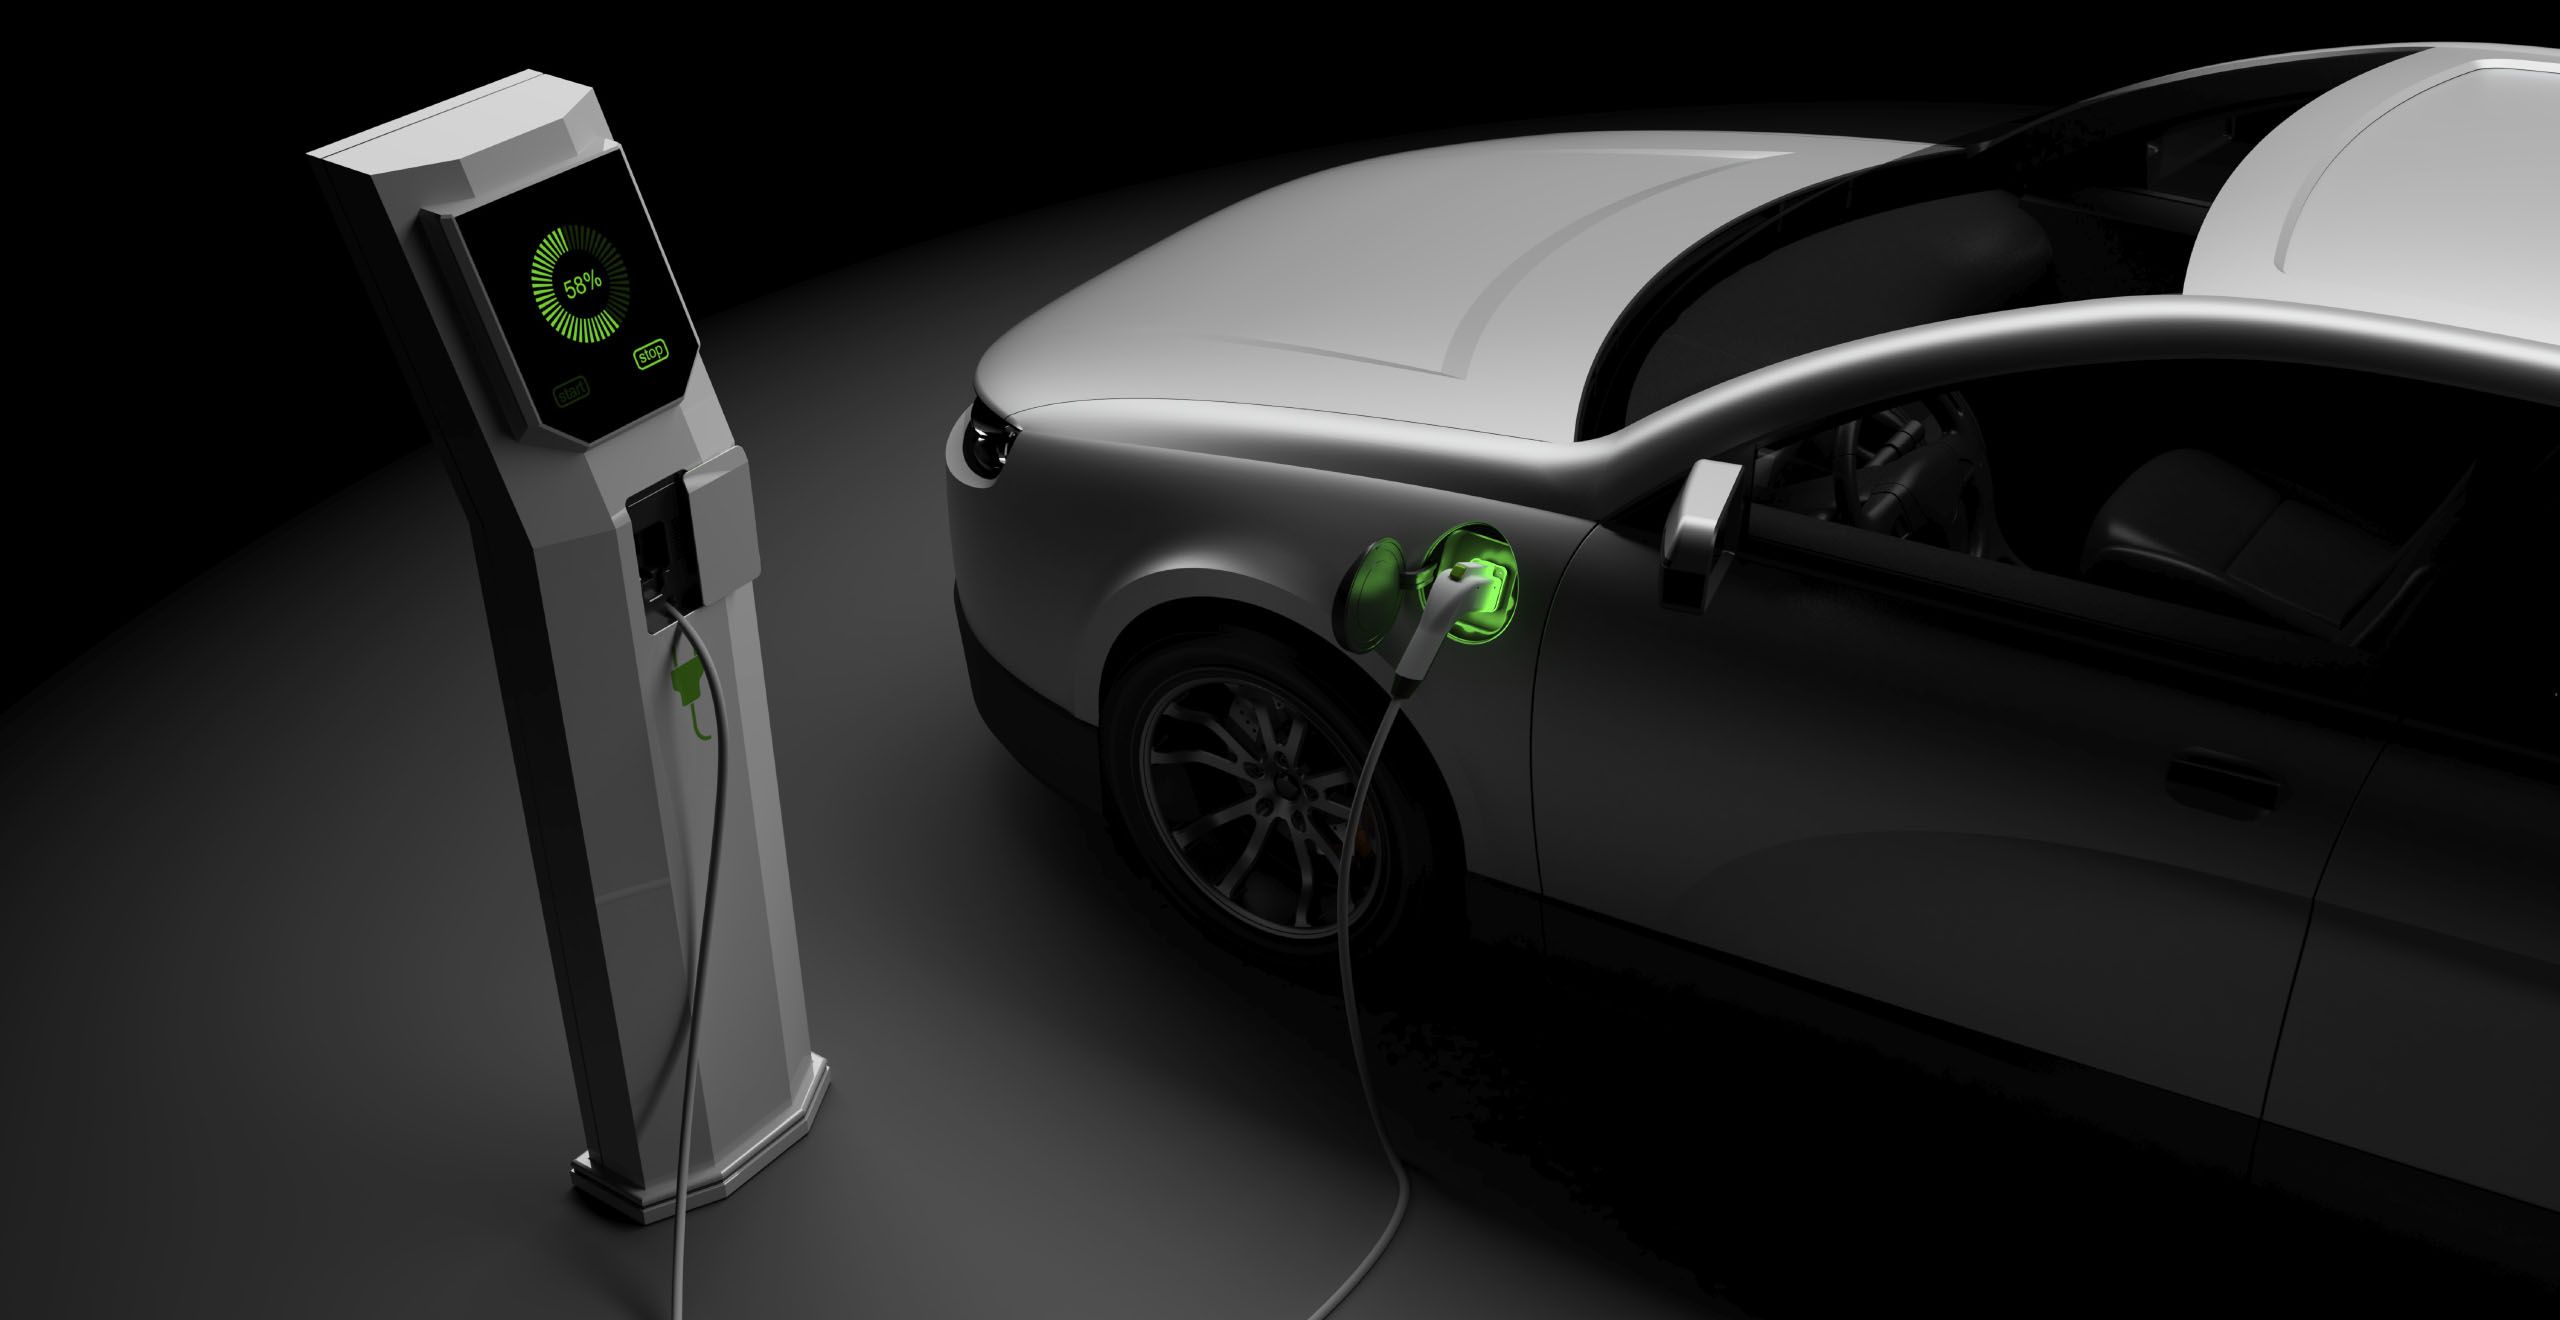 Включи машину зарядку. Электрозаправка для электромобилей Тесла. Зарядка электромобиля VW i4. Energy Star зарядка электромобилей. 8.26 «Зарядка электромобилей».